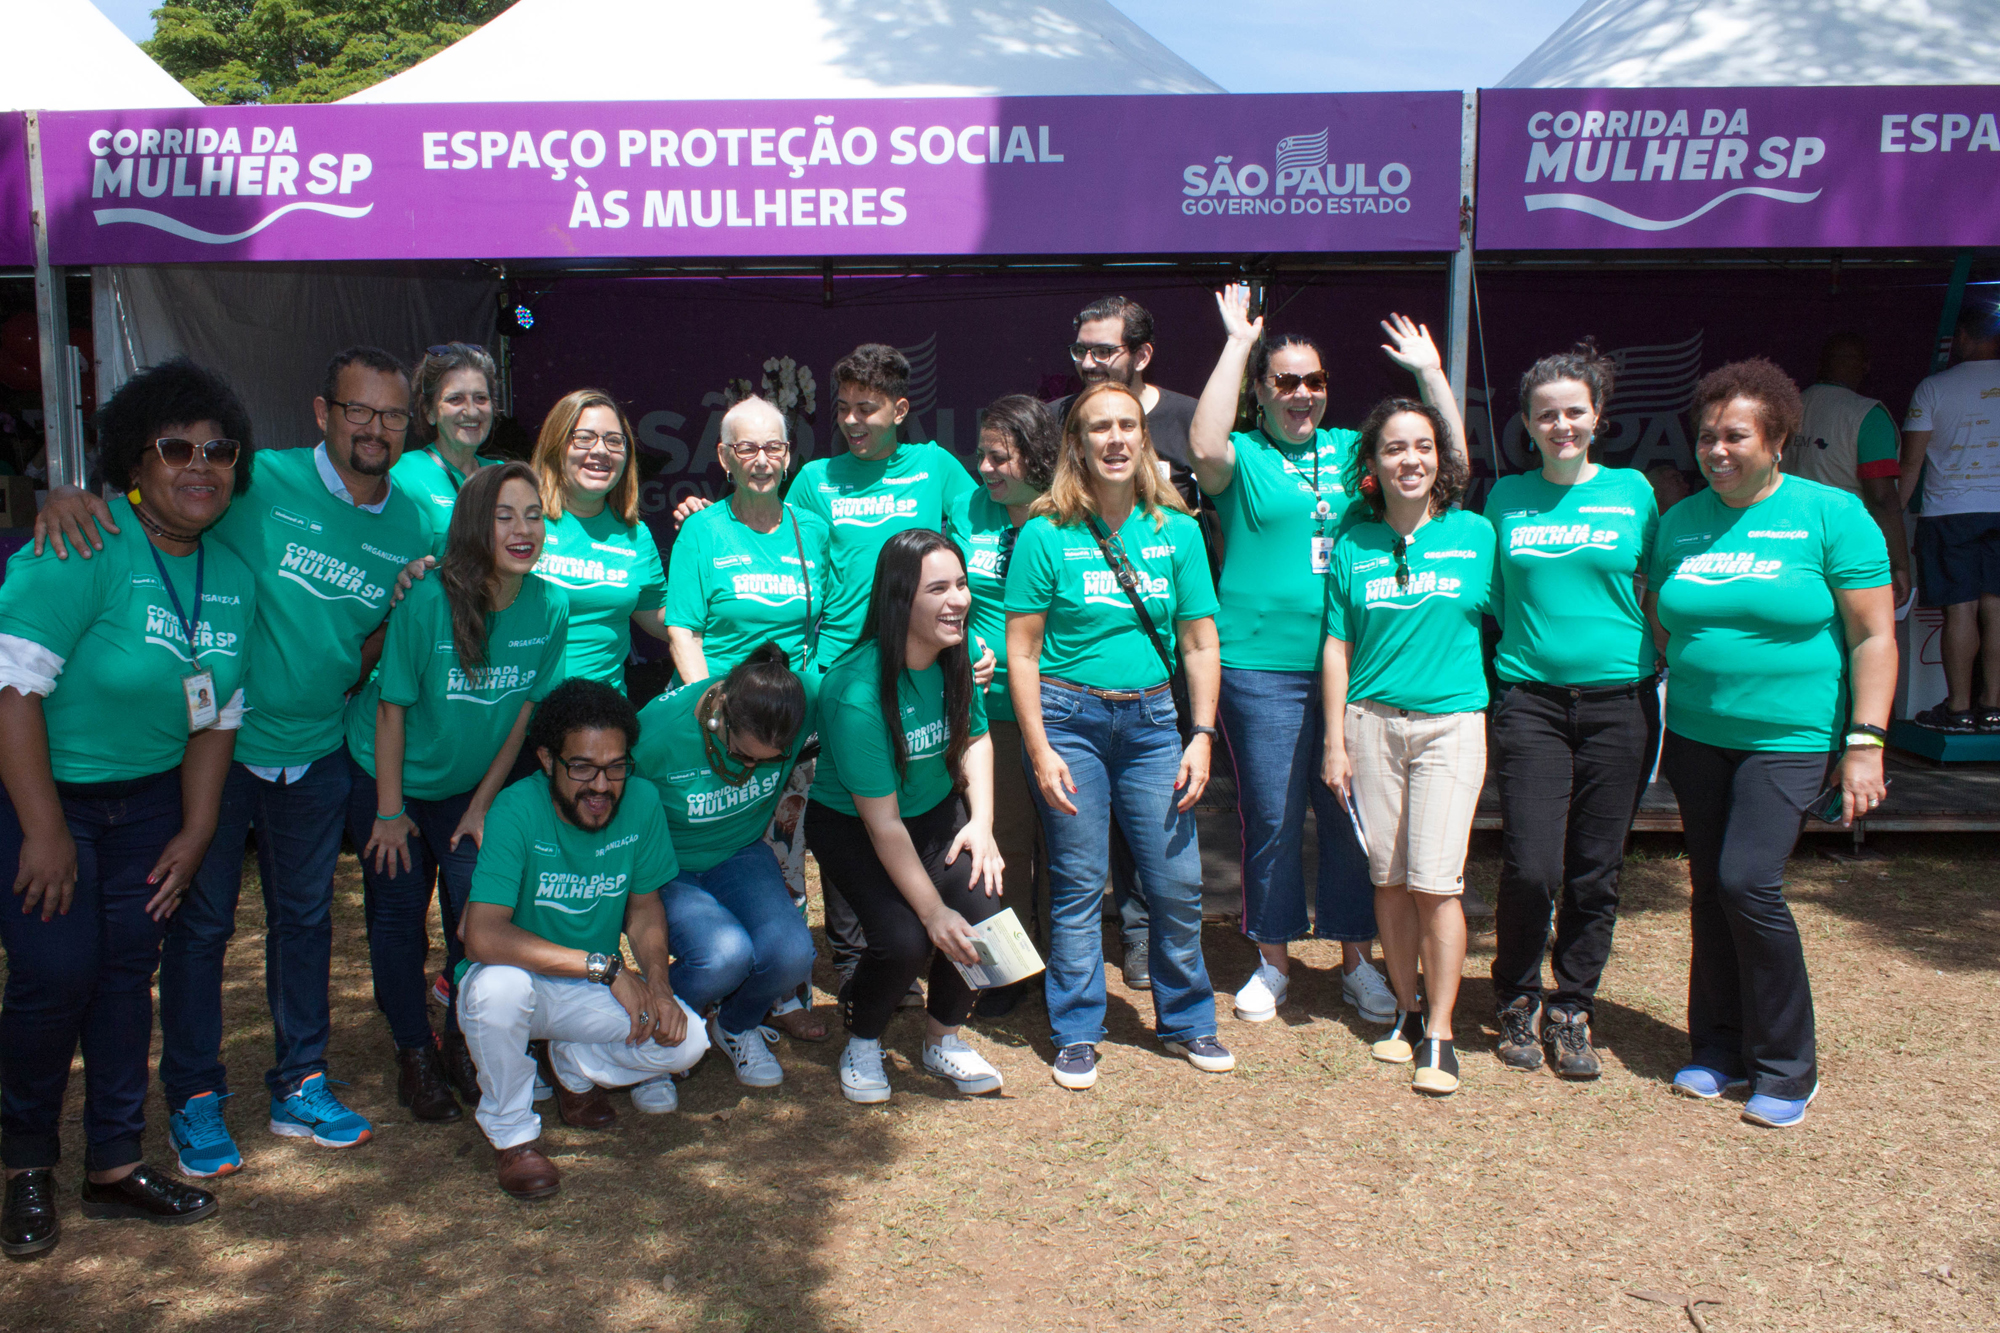 17 pessoas vestidas com blusas verdes sorriem para a foto em frente ao Espaço Proteção Social às Mulheres.